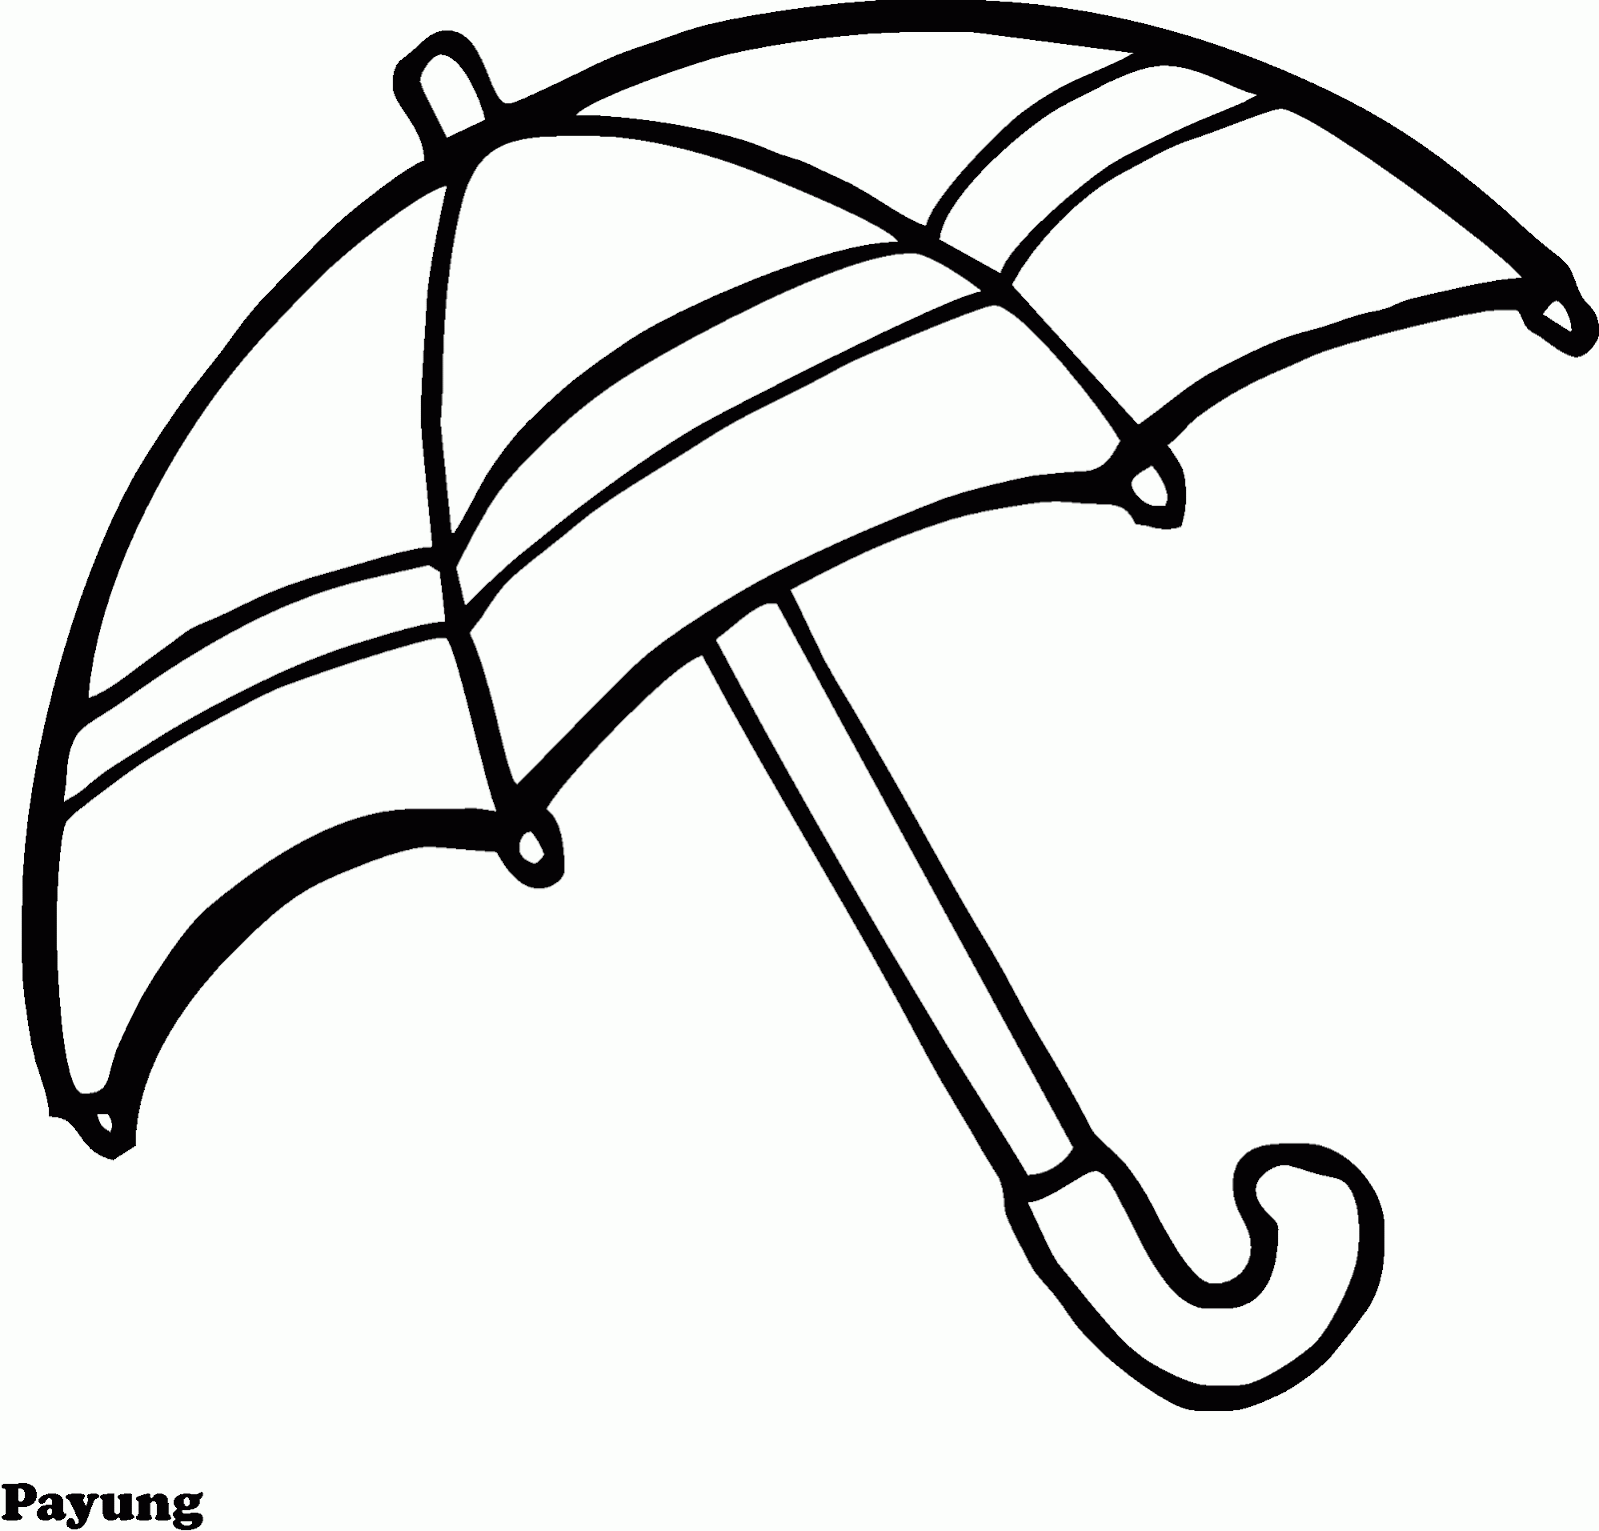 Mewarnai Gambar Payung, Musim Hujan Soalnya :) - Contoh 